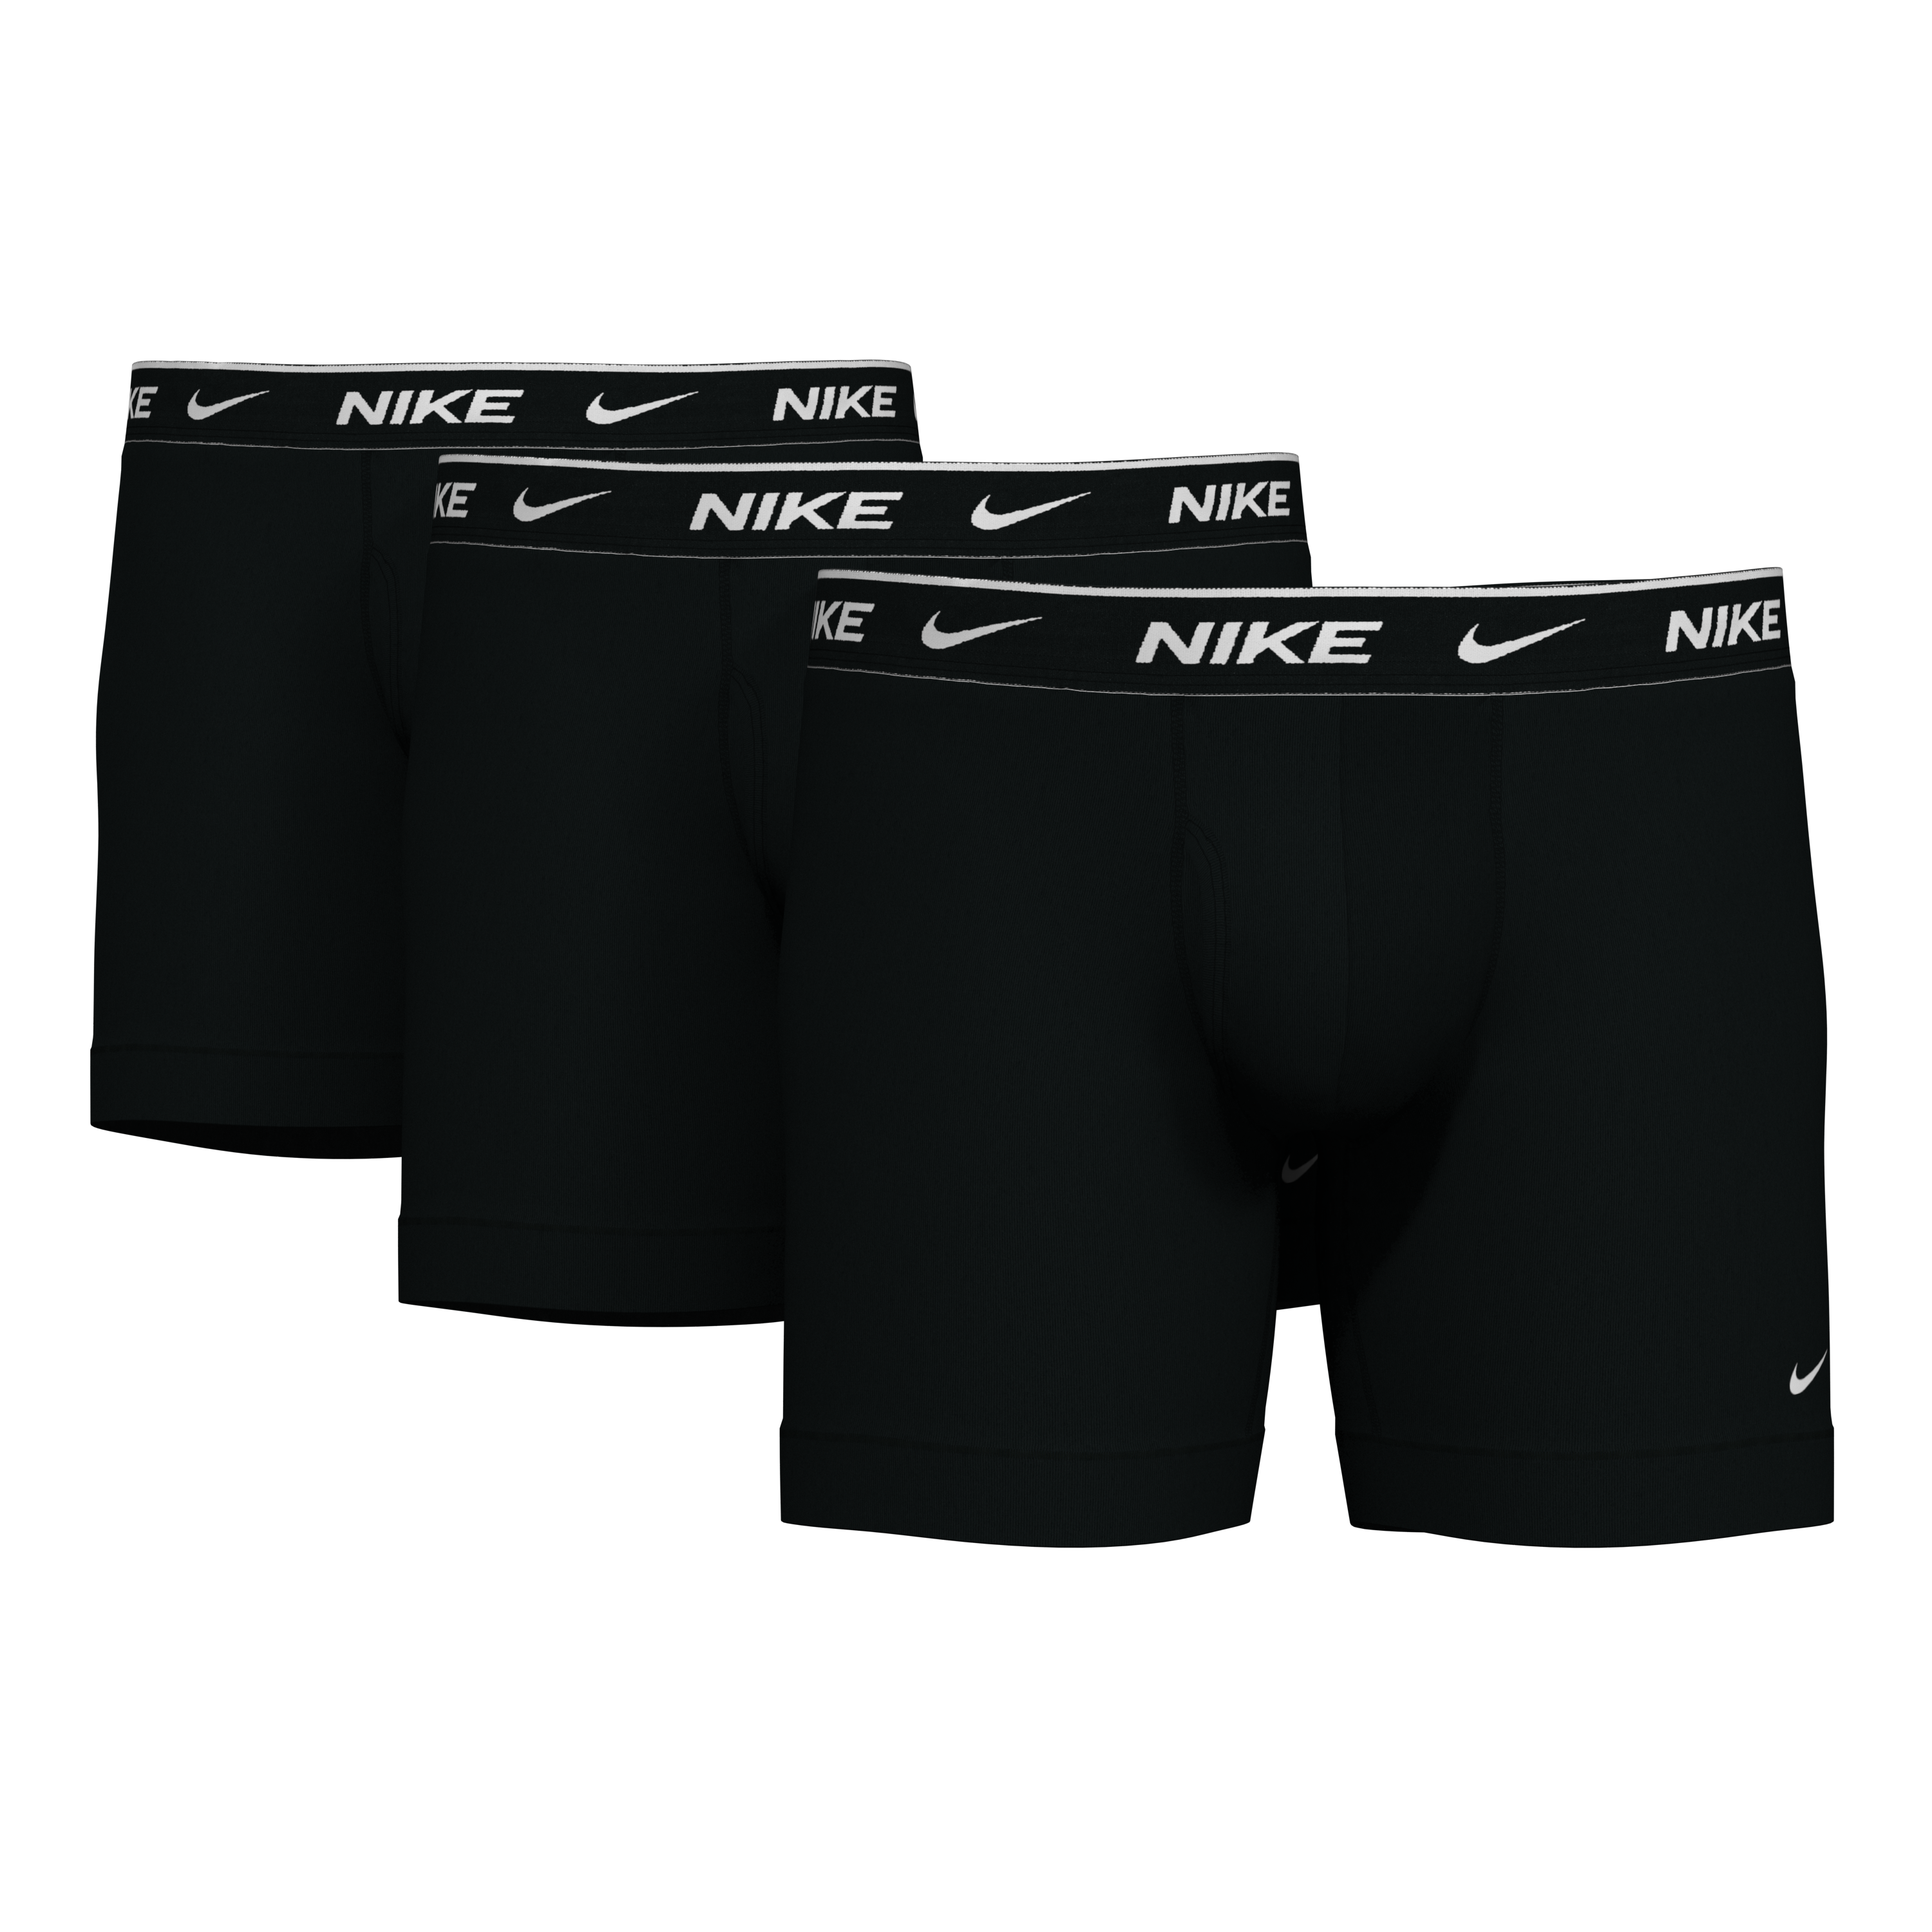 Nike Dri-FIT Essential Micro Men's Boxer Briefs.